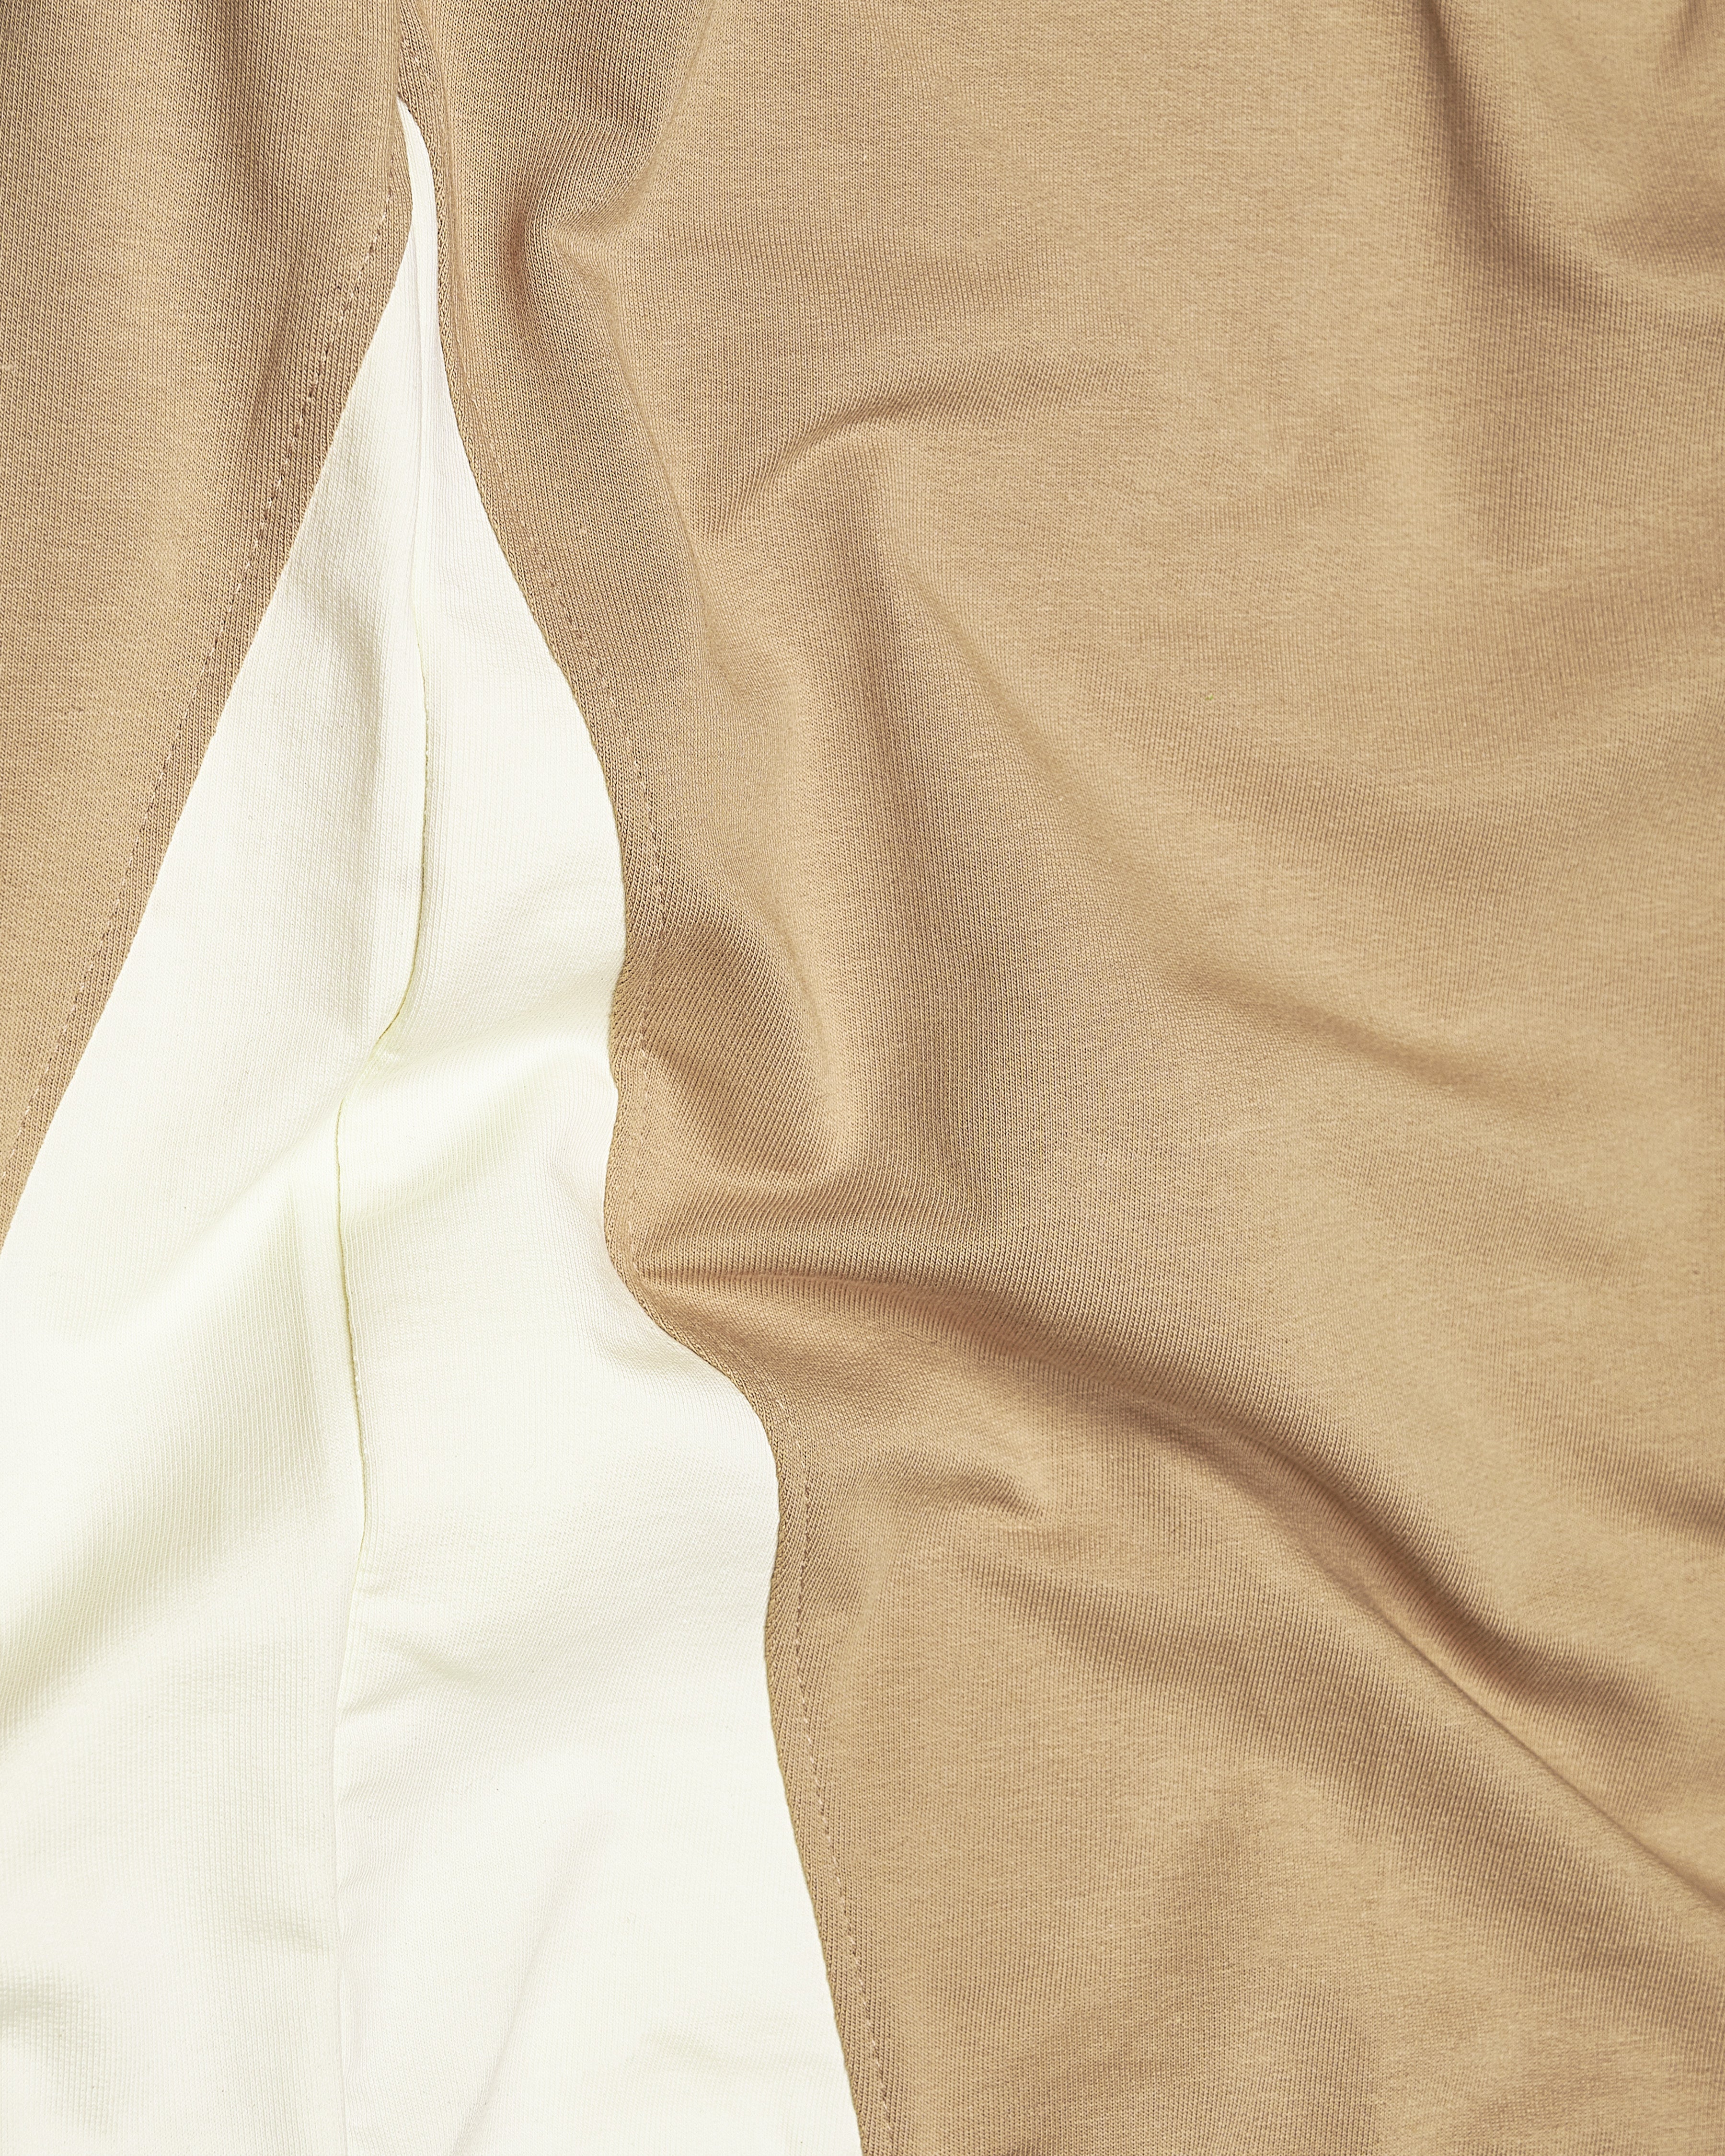 Desert Brown Block Pattern Full Sleeve Premium Cotton Heavyweight Sweatshirt TS674-S, TS674-M, TS674-L, TS674-XL, TS674-XXL